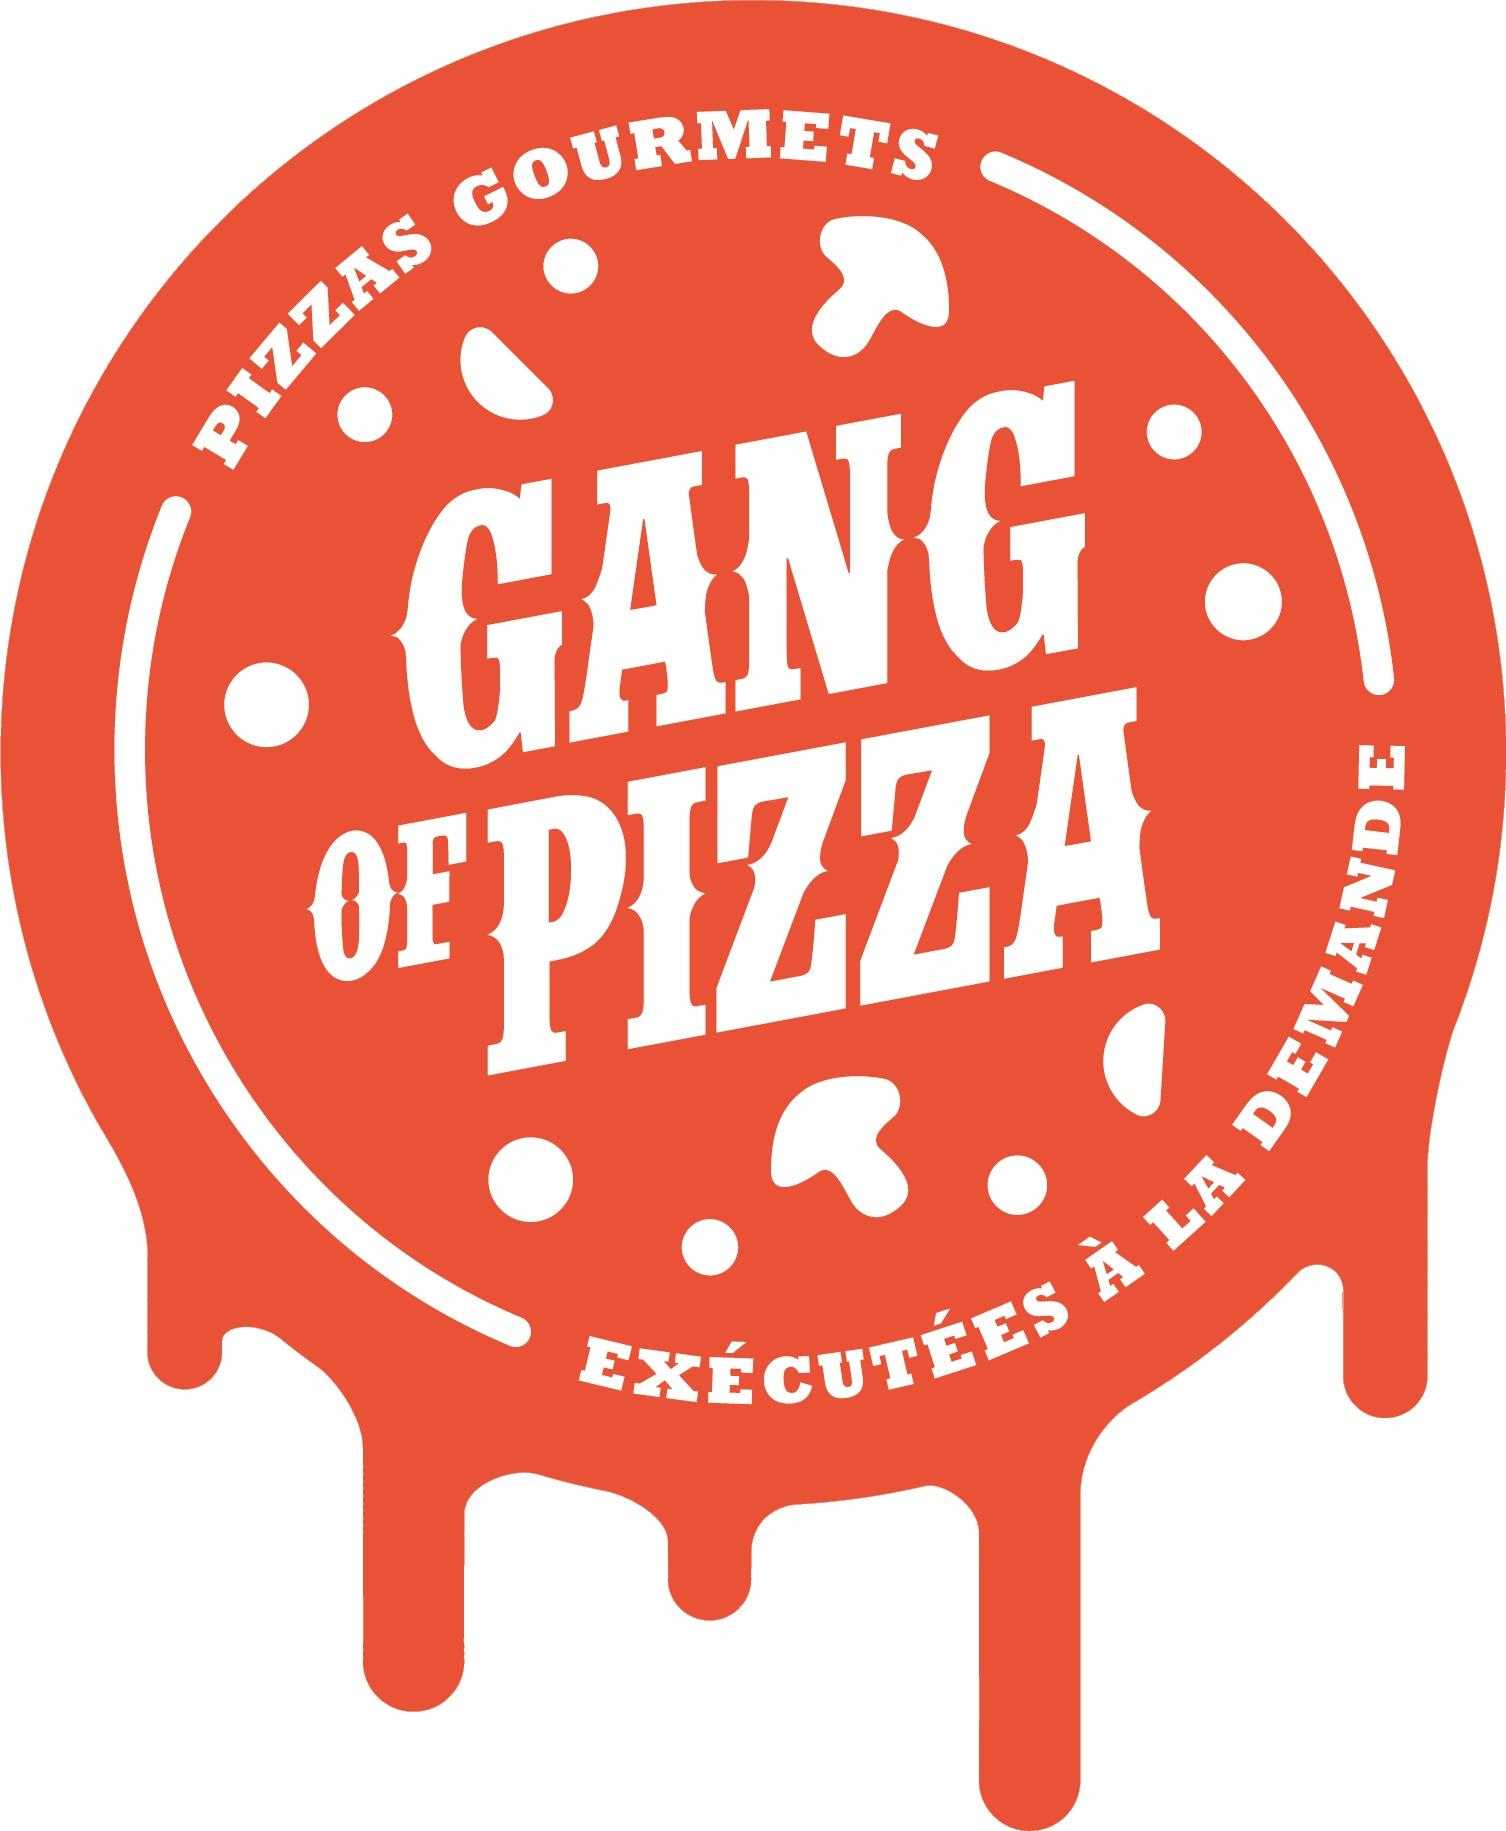 Gang Of Pizza Sainte Foy L'argentière